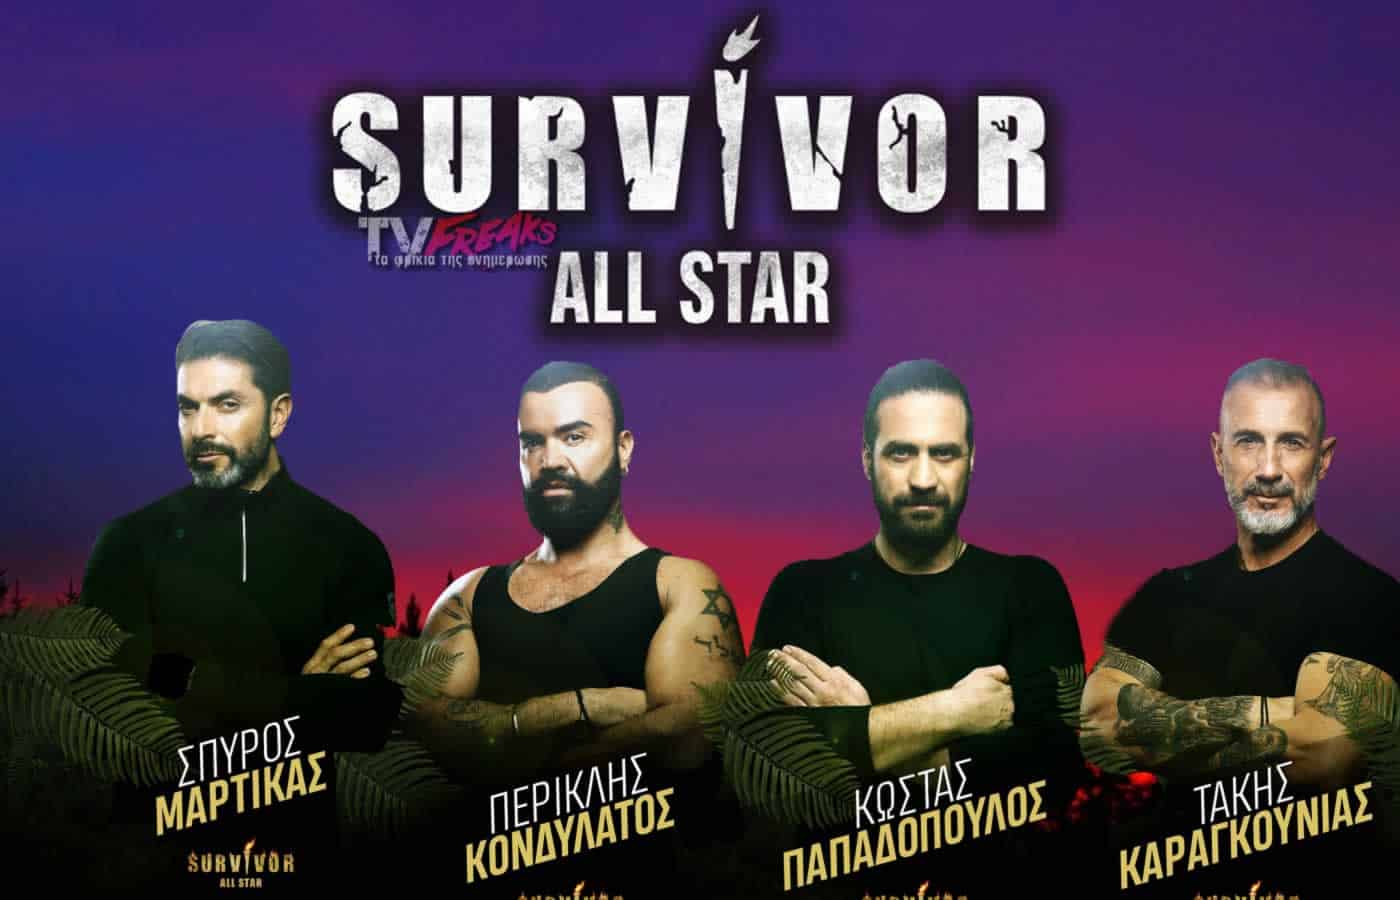 Το πρώτο γύρισμα της χρονιάς στο Survivor All Star έγινε χτες βράδυ και σας έχουμε το πρώτο spoiler, το οποίο βλέπει το φως της δημοσιότητας